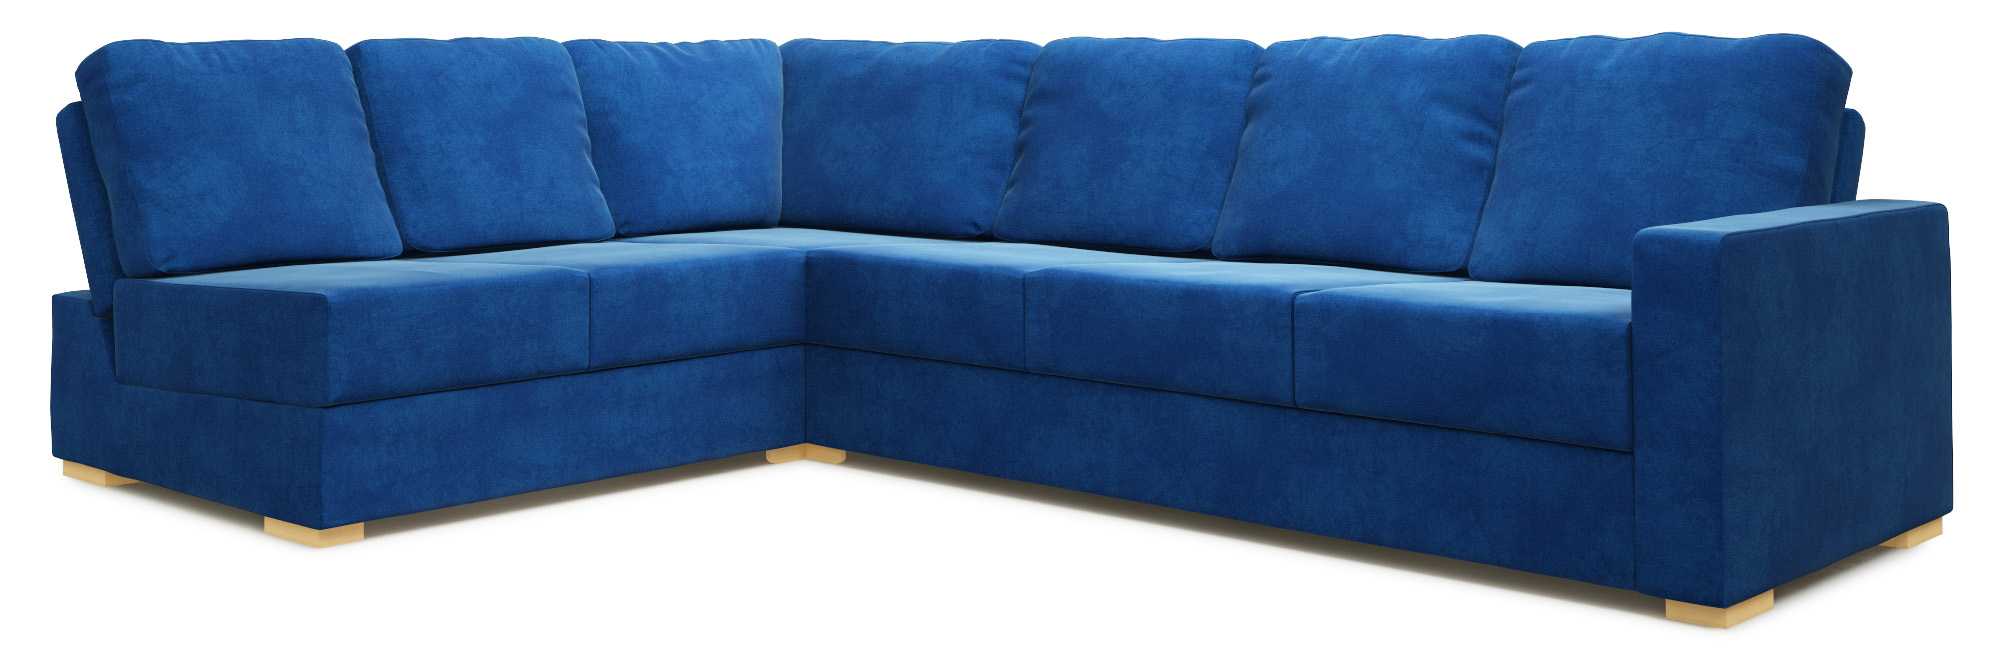 Lear Armless 4X3 Double Sofa Bed